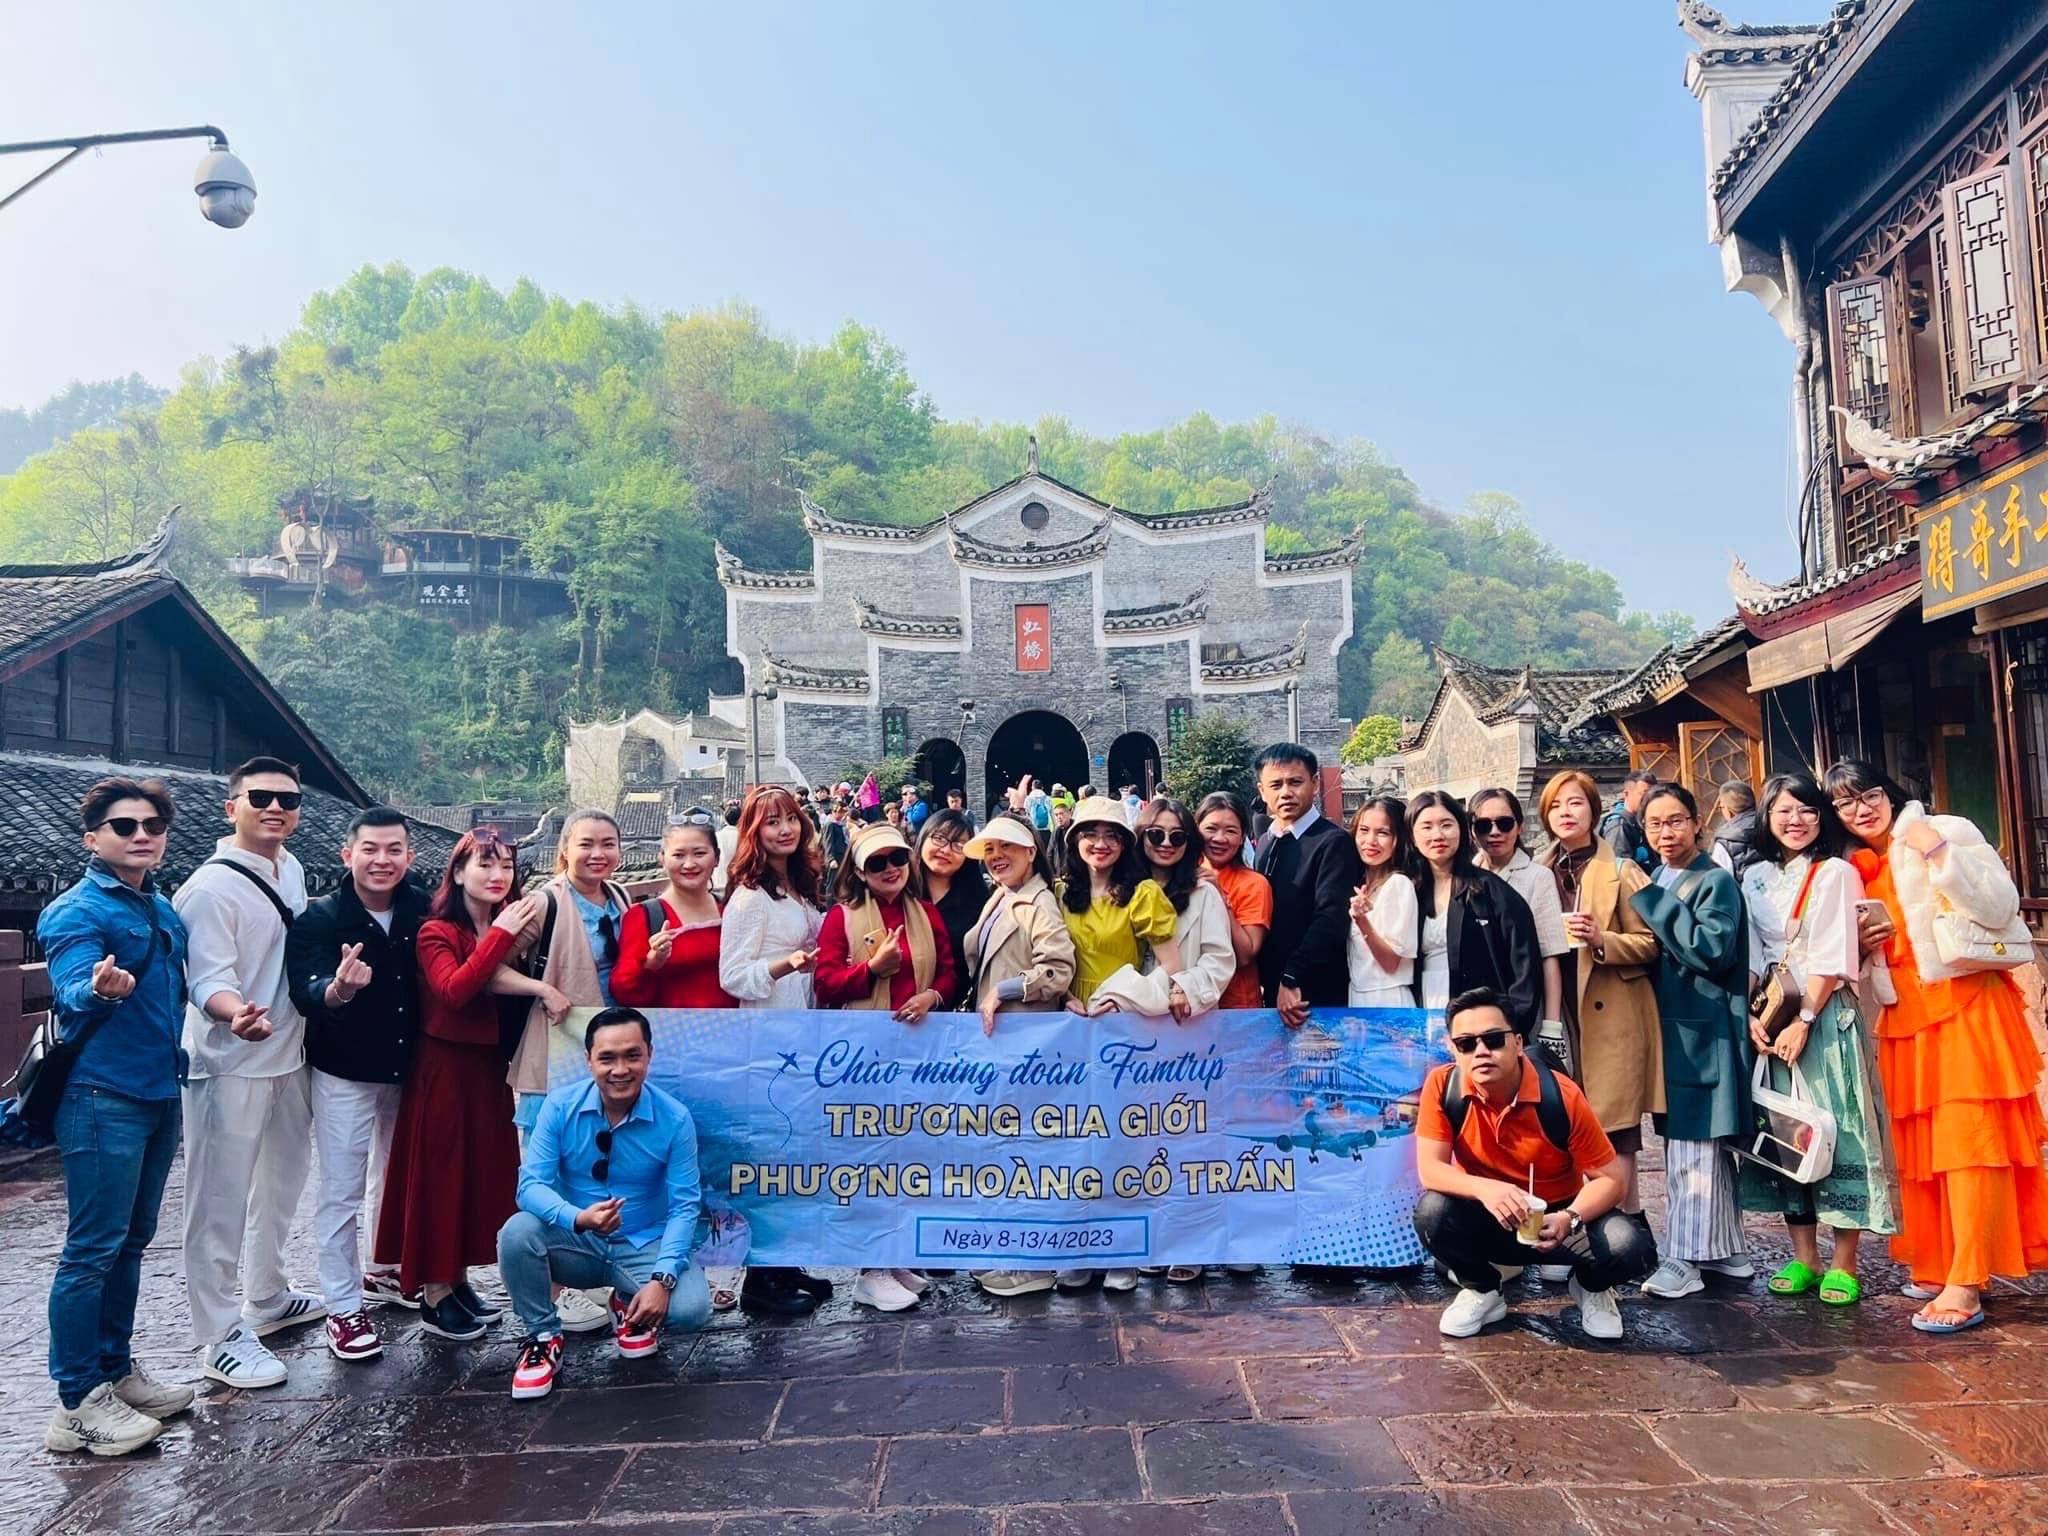 DU LỊCH TRUNG QUỐC TRƯƠNG GIA GIỚI - PHƯỢNG HOÀNG CỔ TRẤN 6N5D Tour Du Lịch Trung Quốc-1